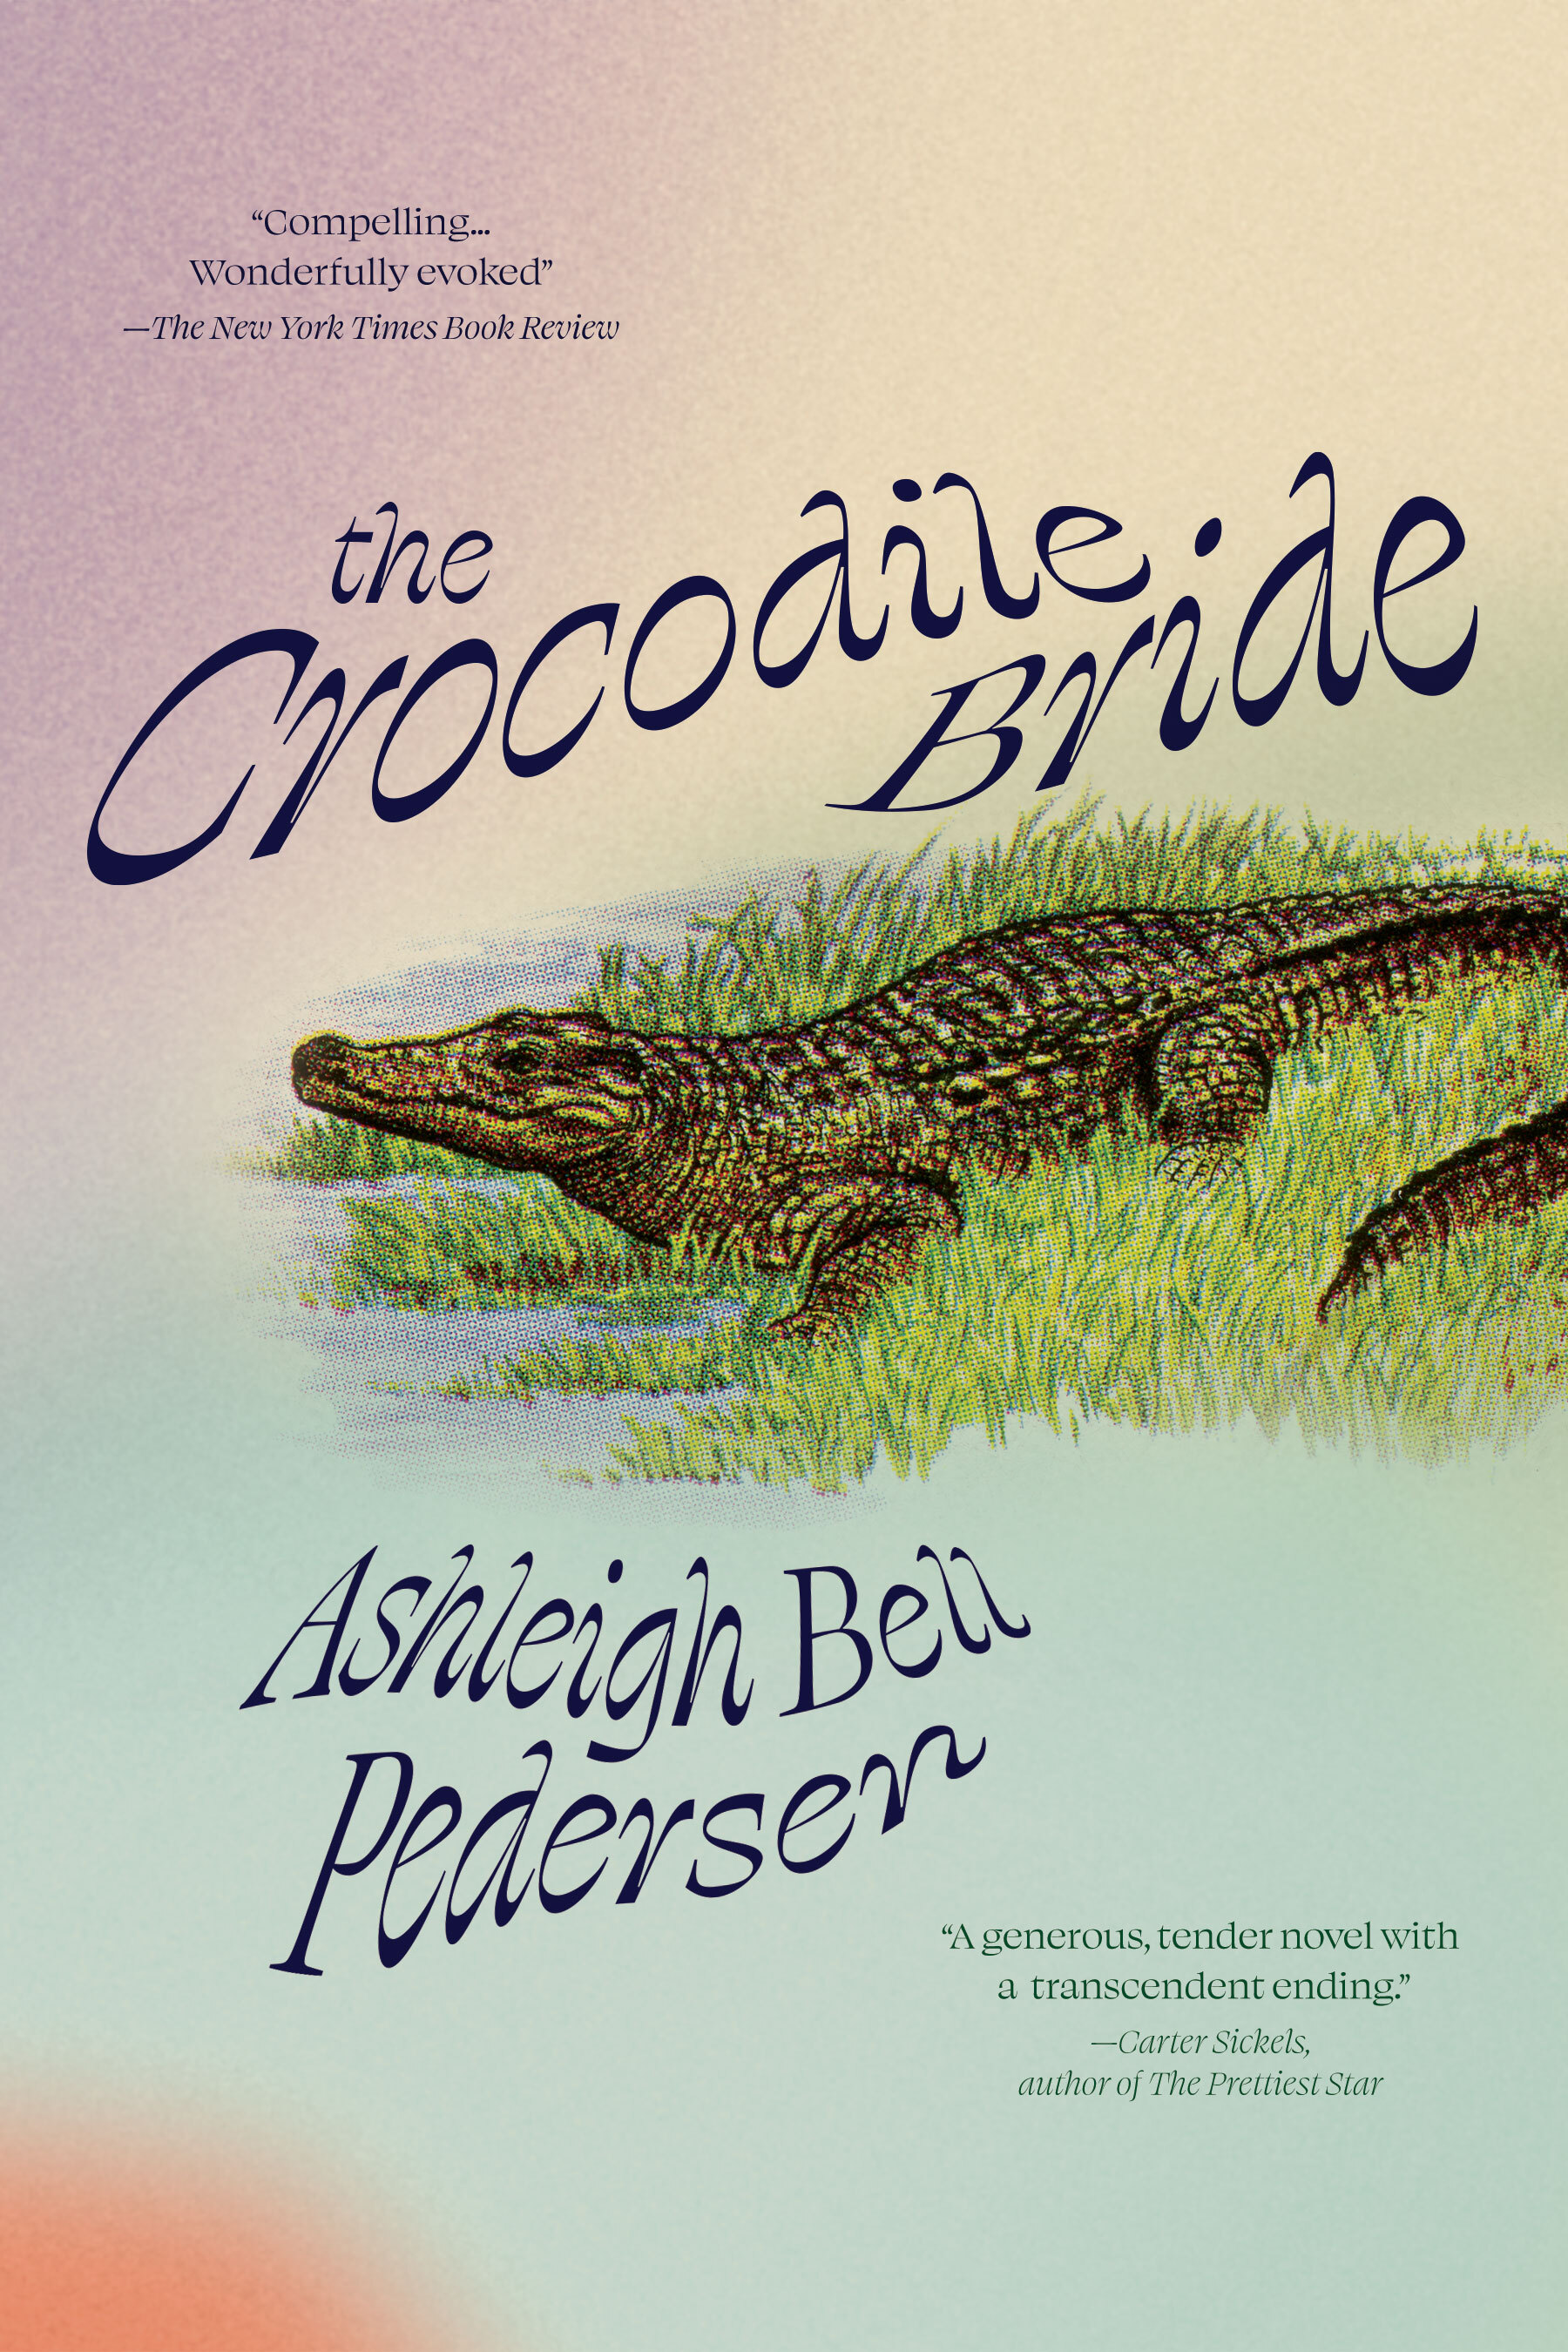 The Crocodile Bride